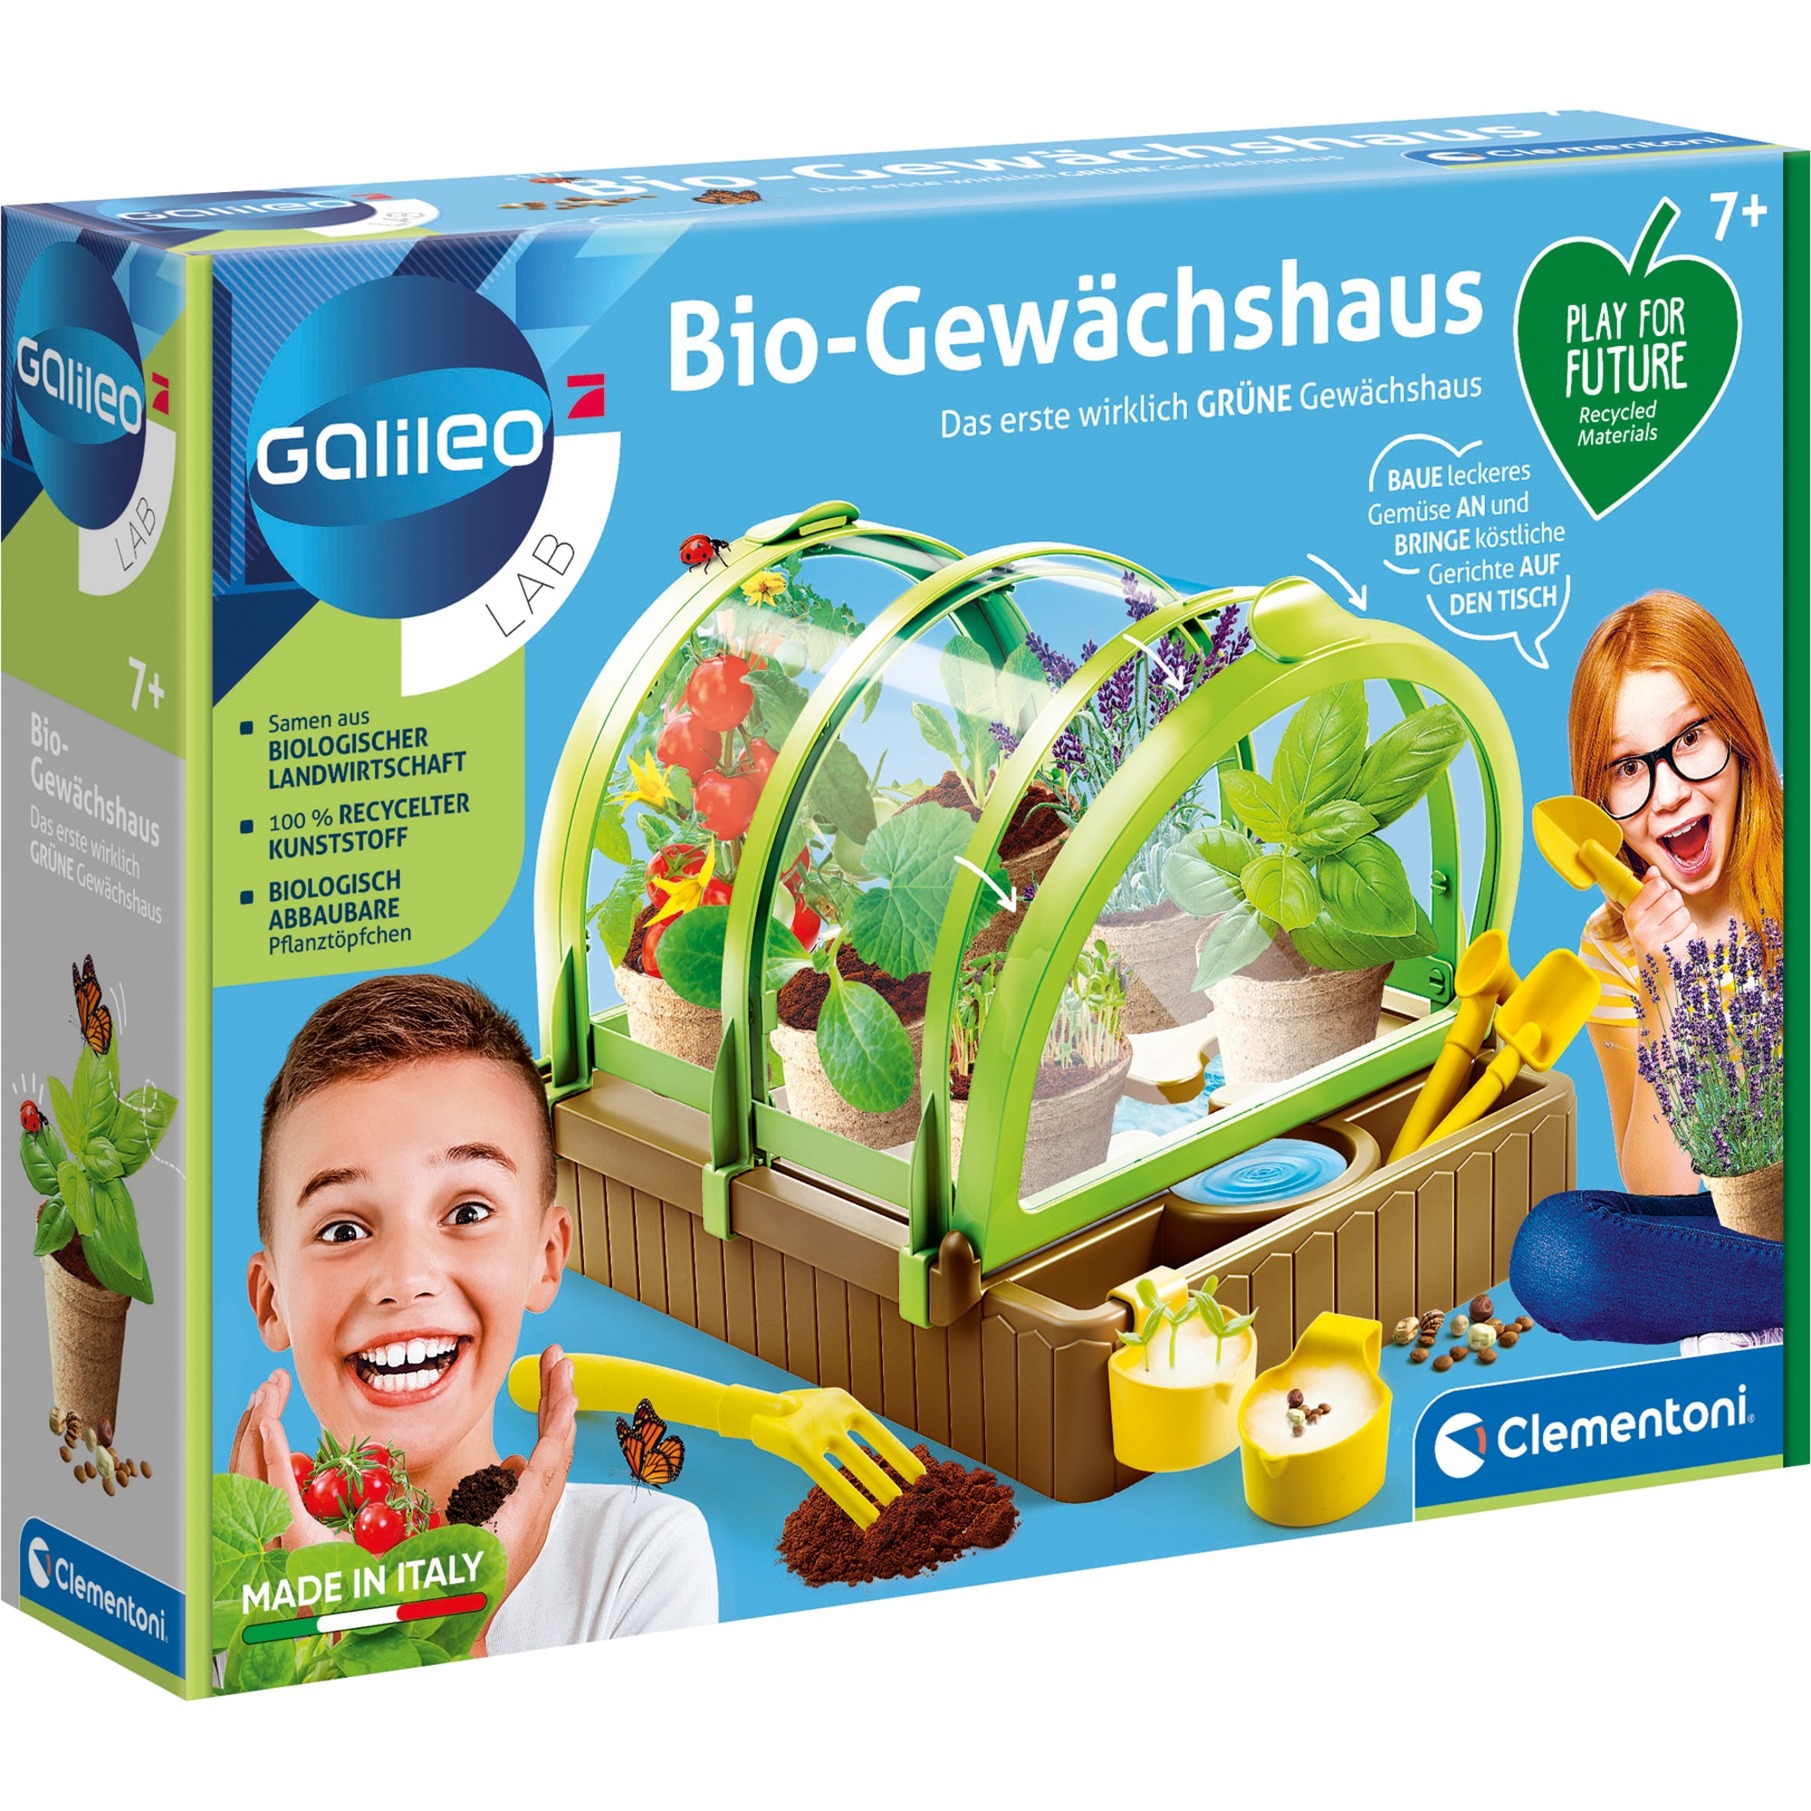 Image of Alternate - Bio-Gewächshaus Play for Future, Experimentierkasten online einkaufen bei Alternate